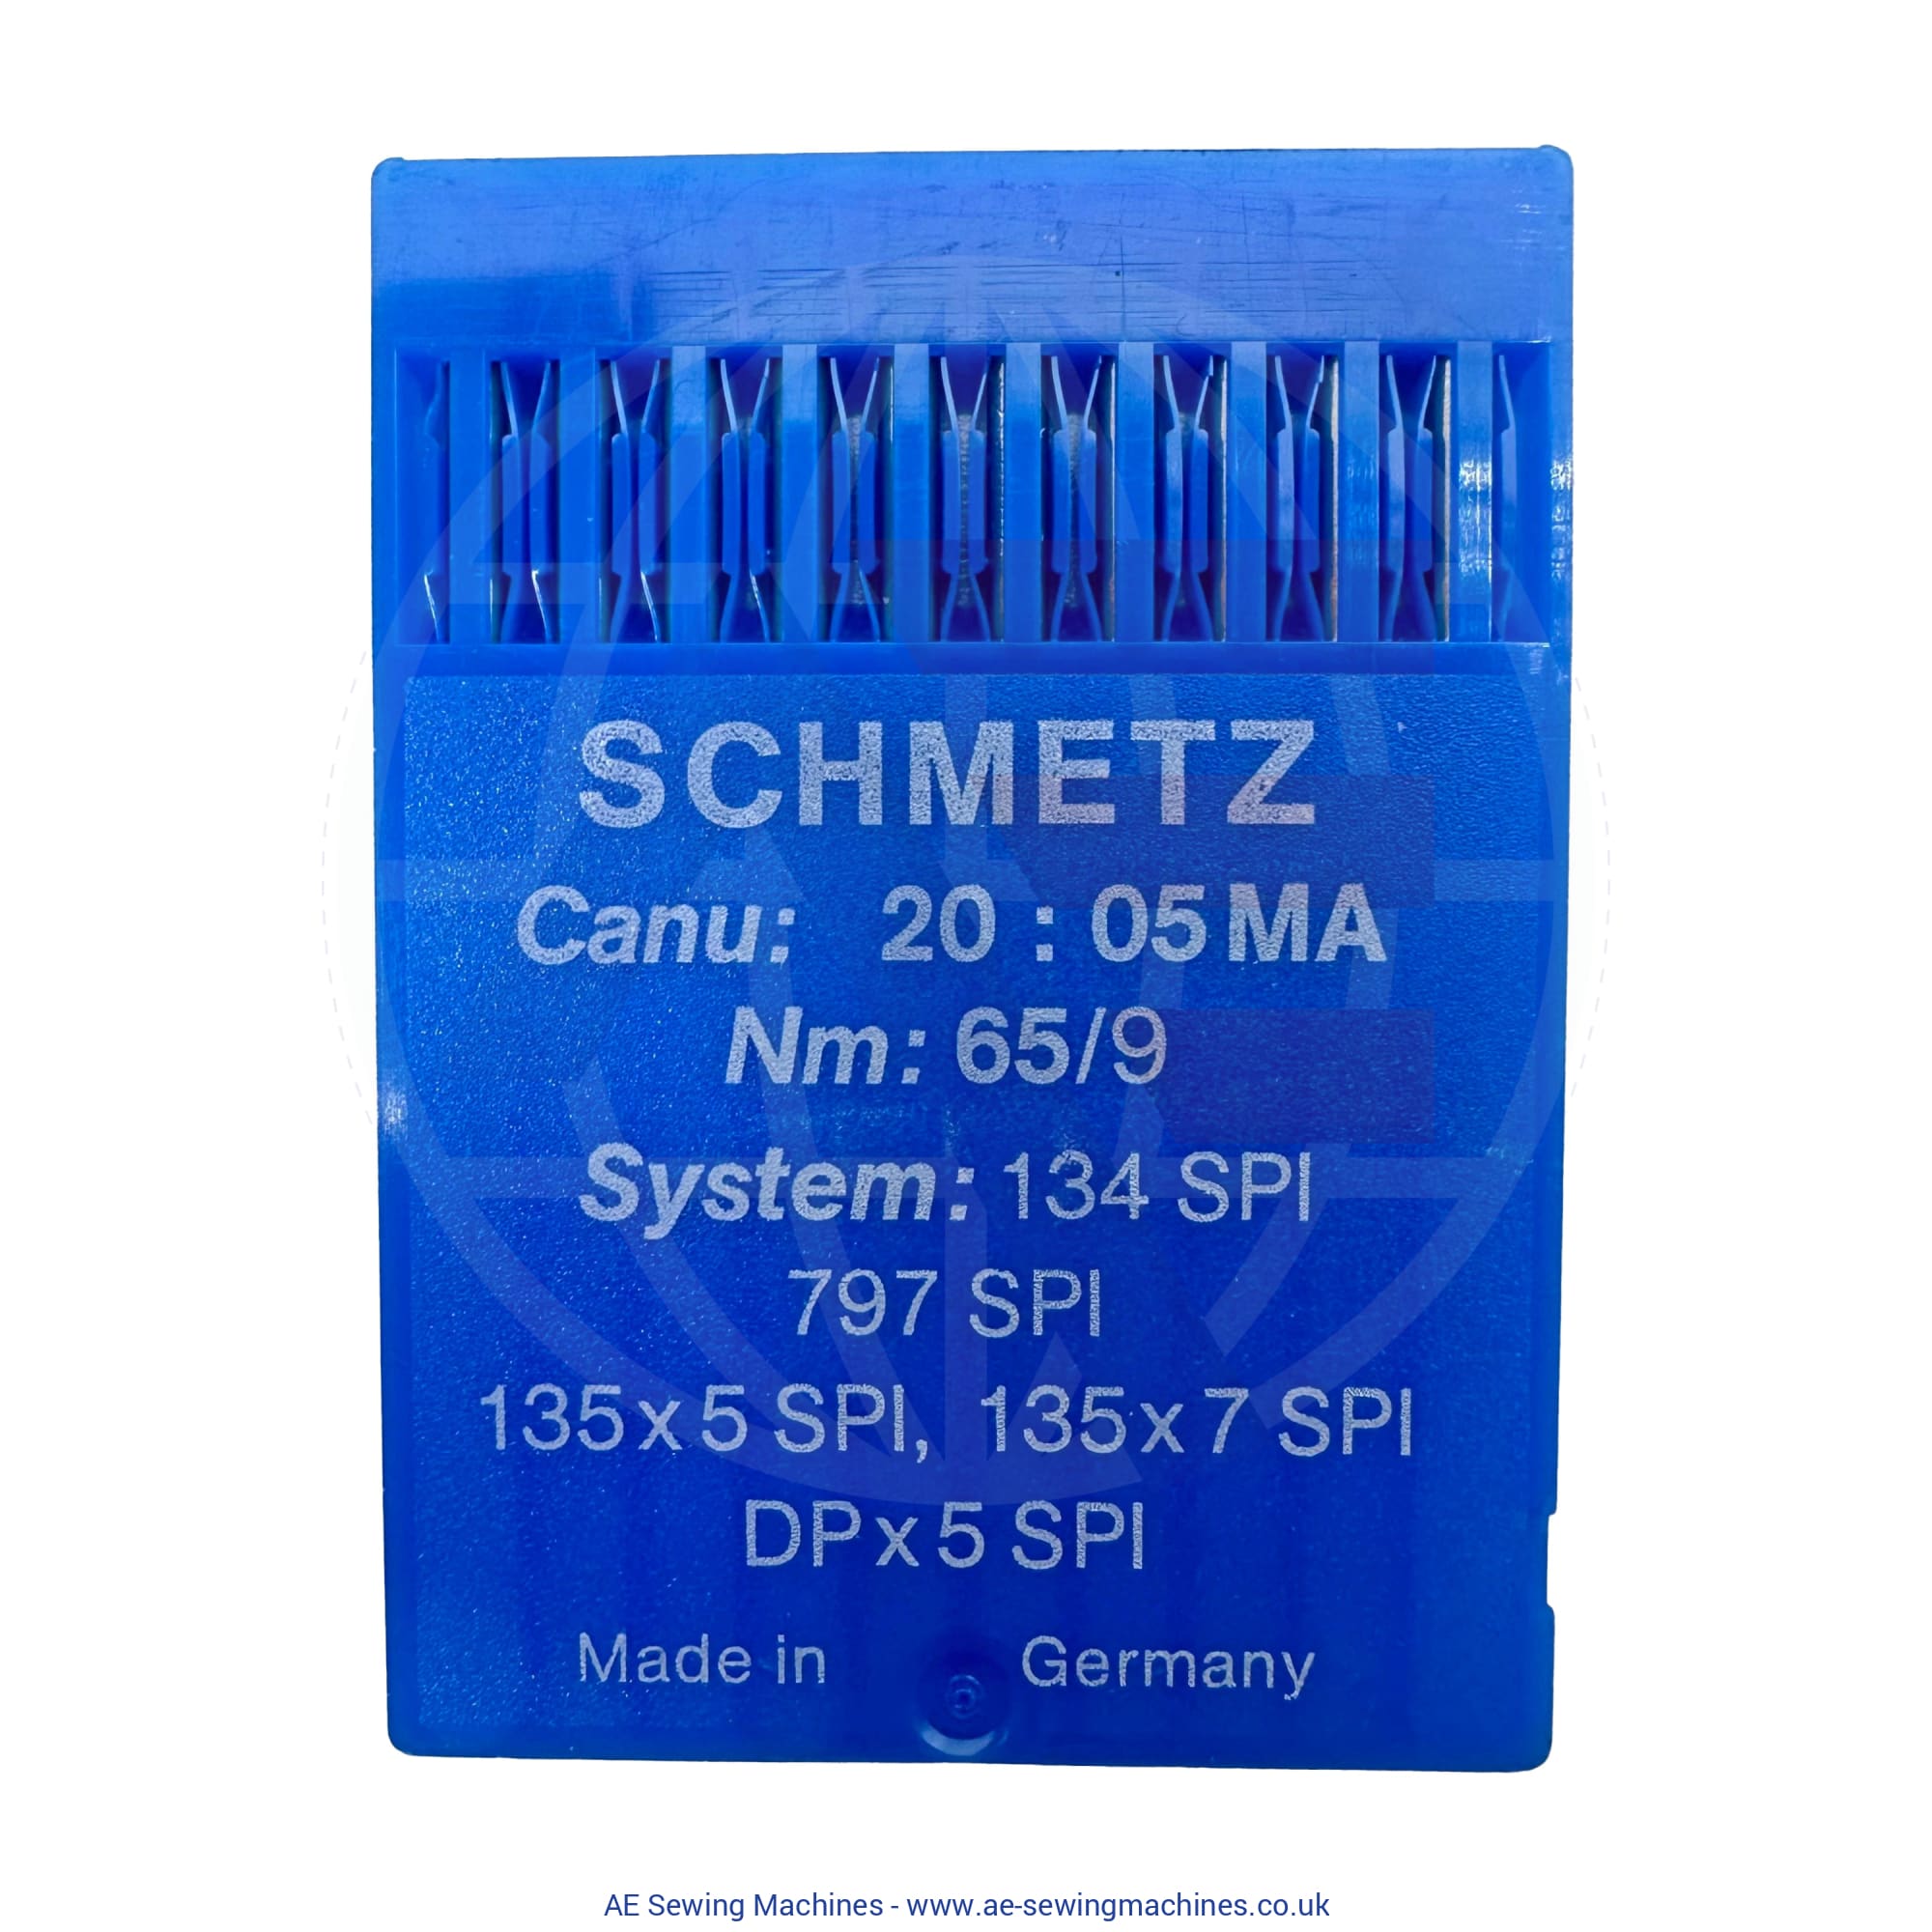 Schmetz 134Spi Sharp Point Needles 65 / Packet Of 10 Sewing Machine